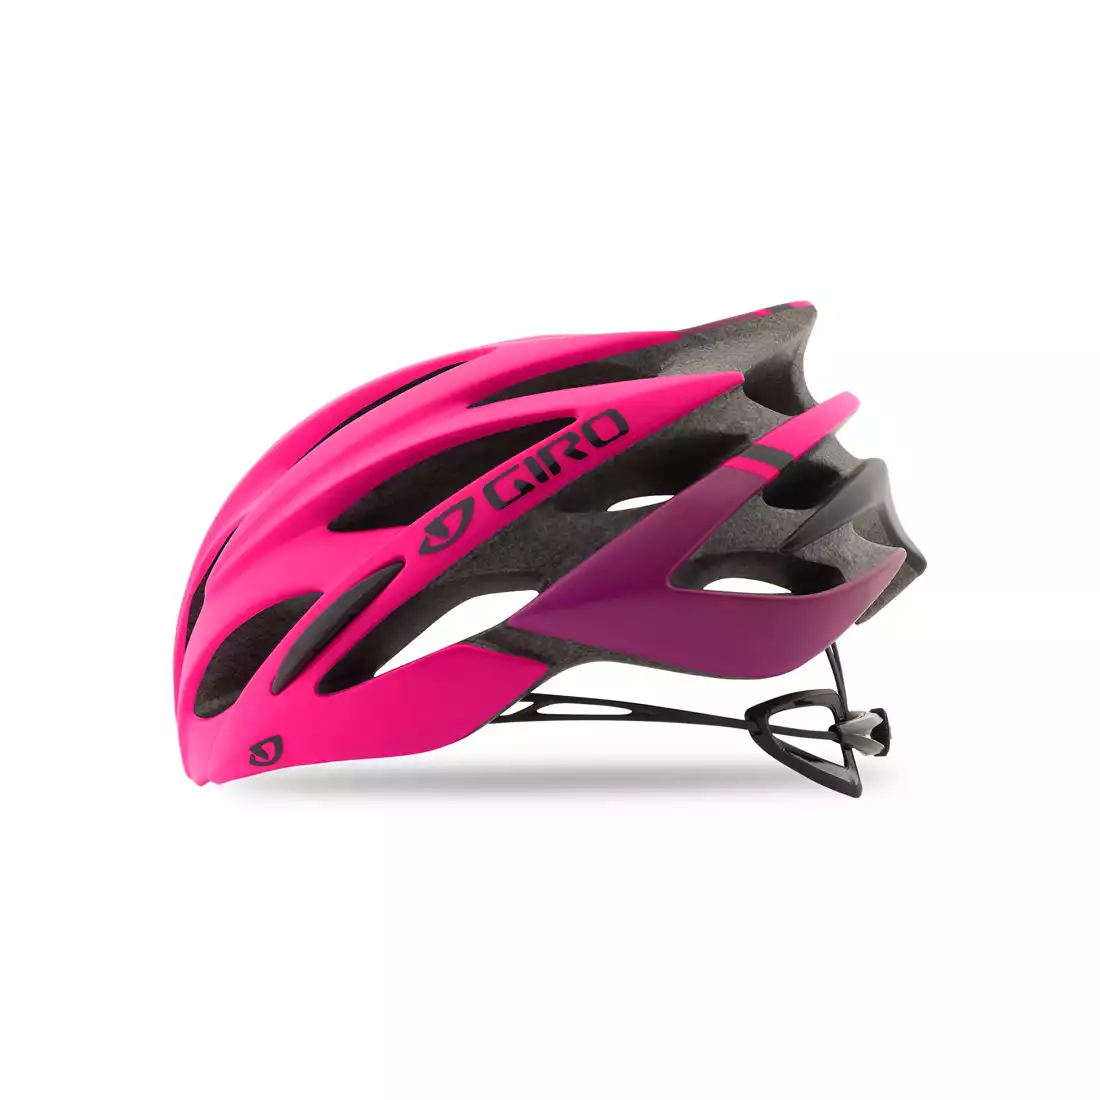 GIRO SONNET - damski kask rowerowy różowy mat